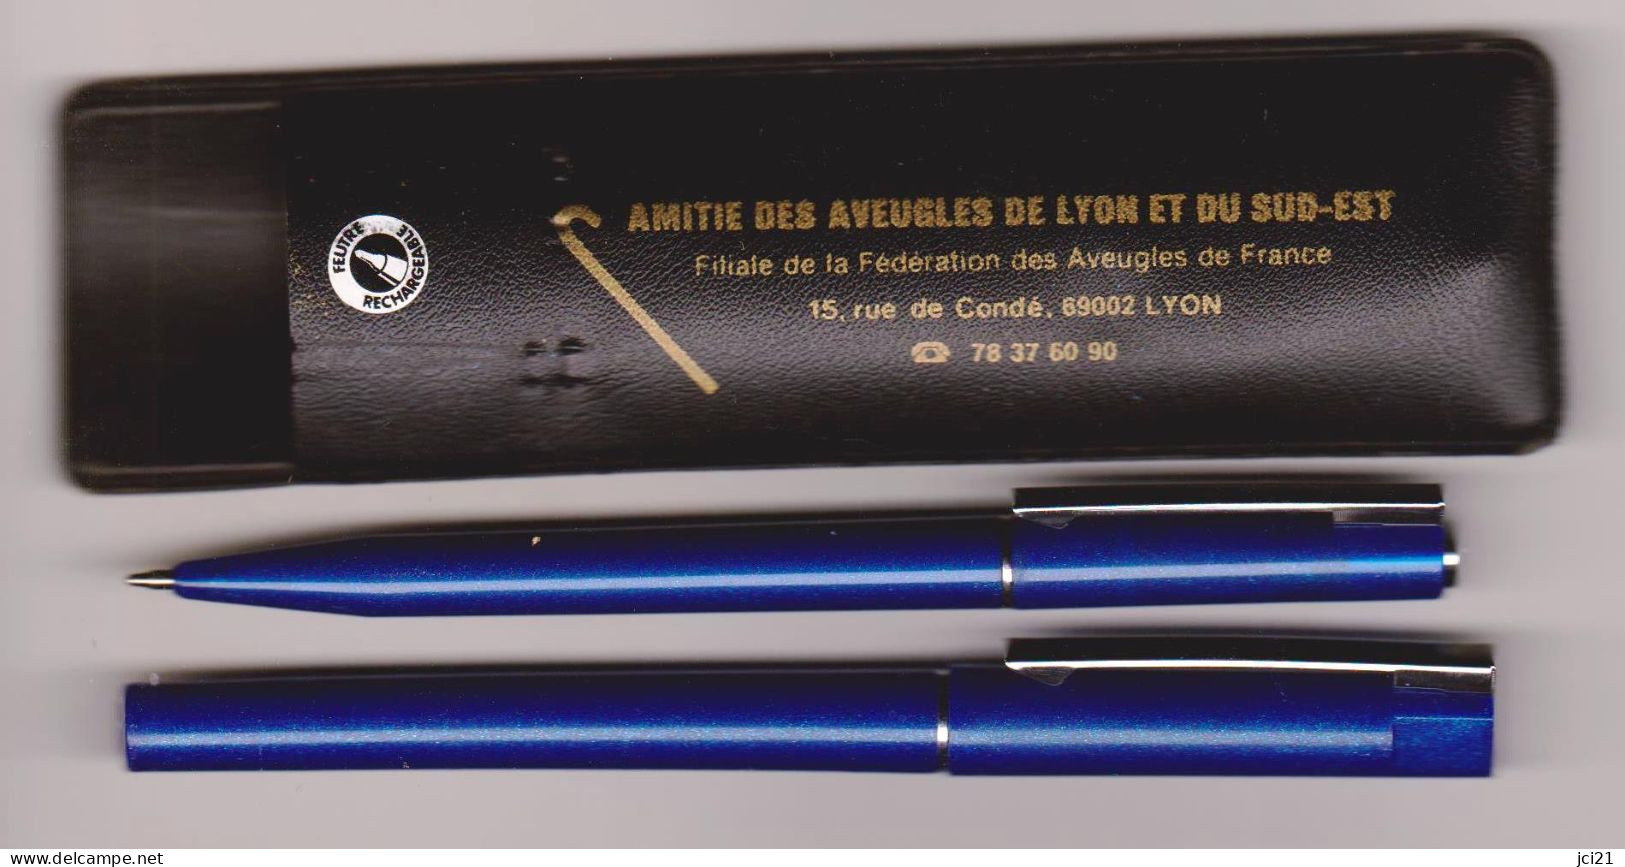 2 Stylos Publicitaires " Amitié Des Aveugles De Lyon Et Du Sud-Est "_Di346 - Stylos